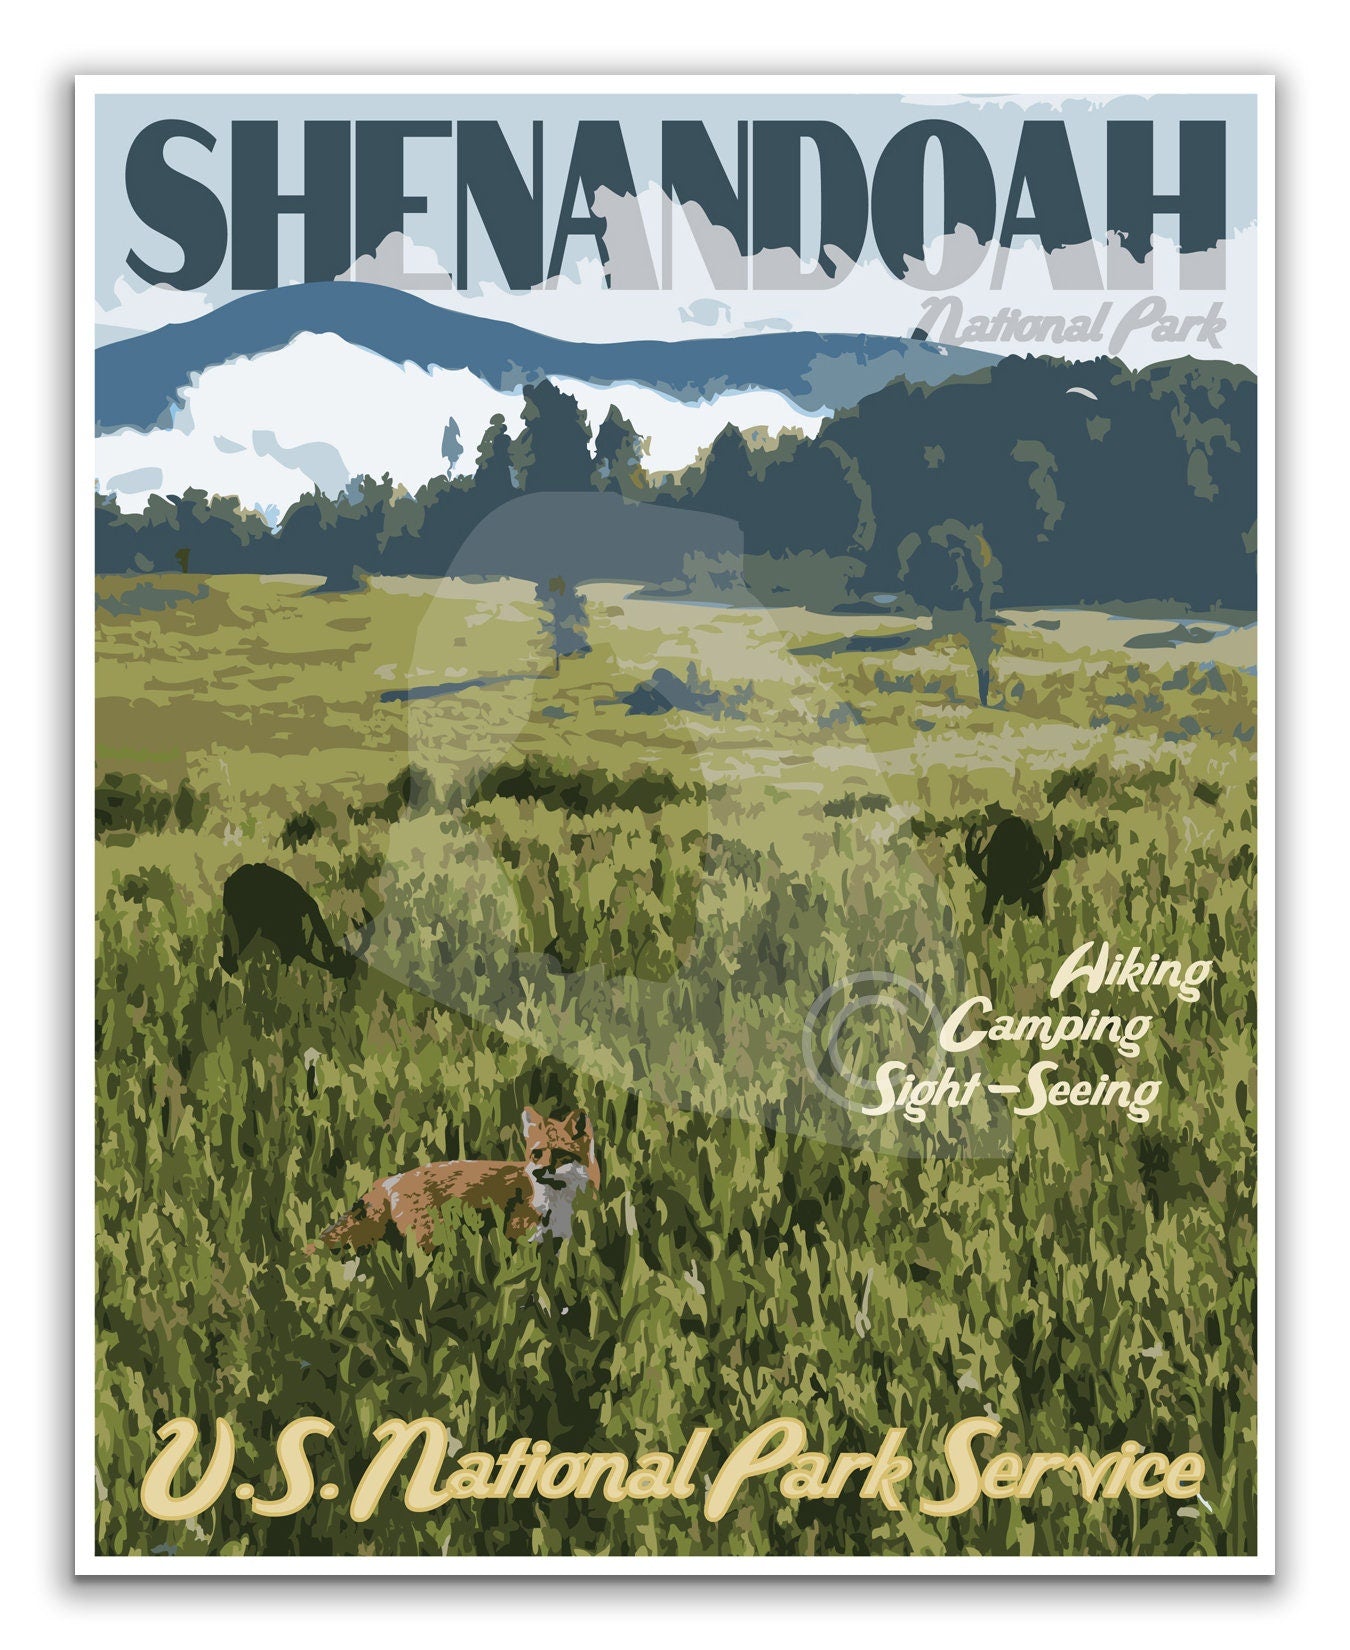 Shenandoah National Park Print, Shenandoah Virginia Poster, Vintage Style Travel Art